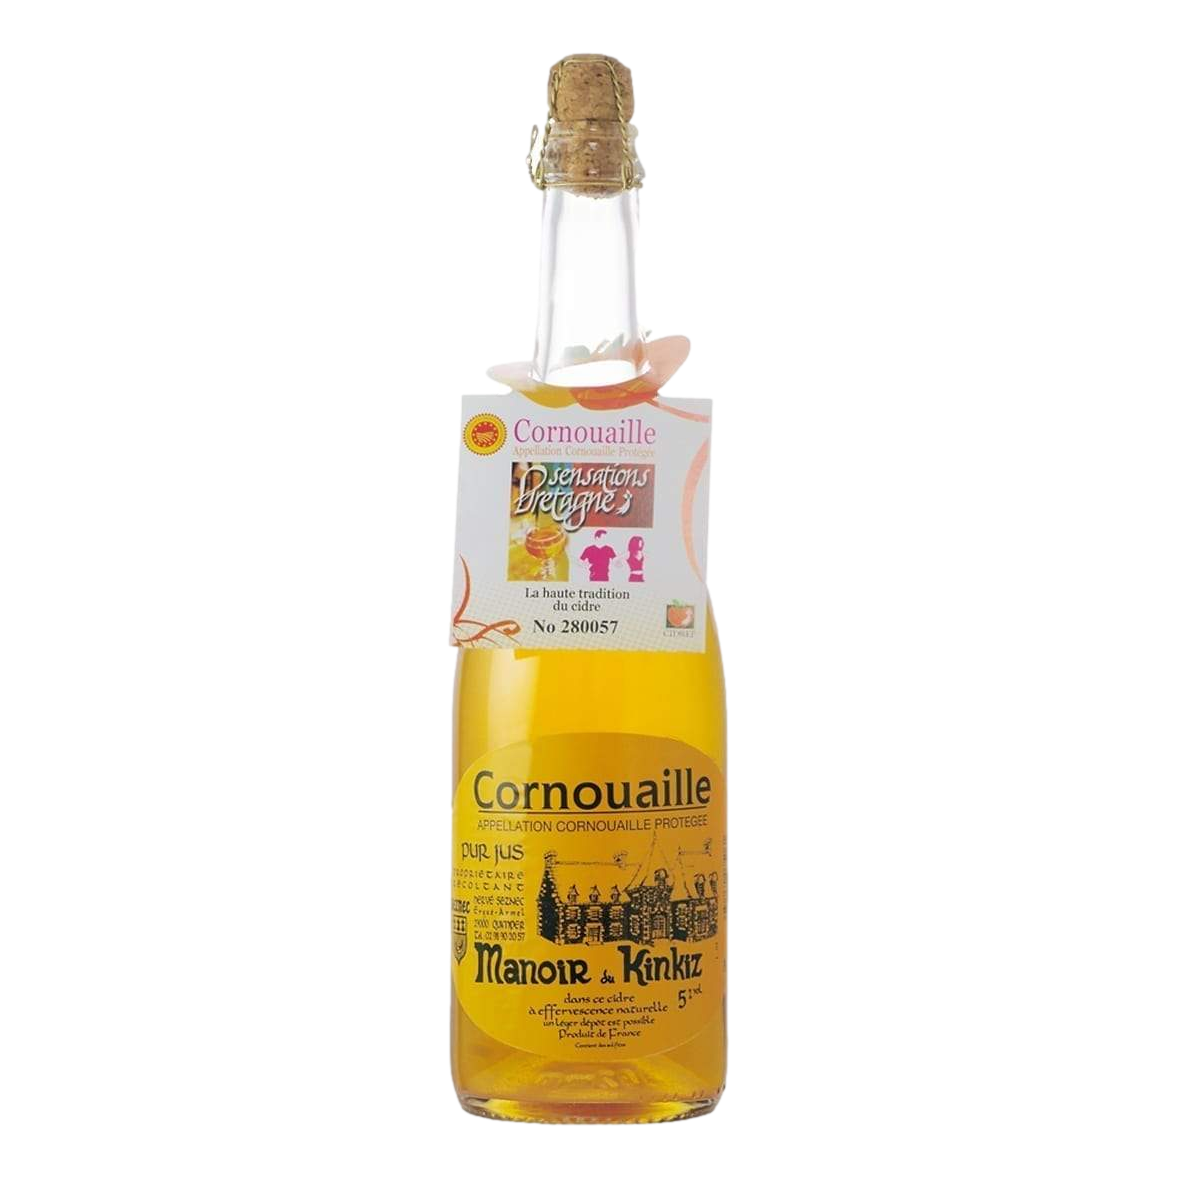 Manoir Kinkiz Cornouaille Cidre 375ml Bottle Single